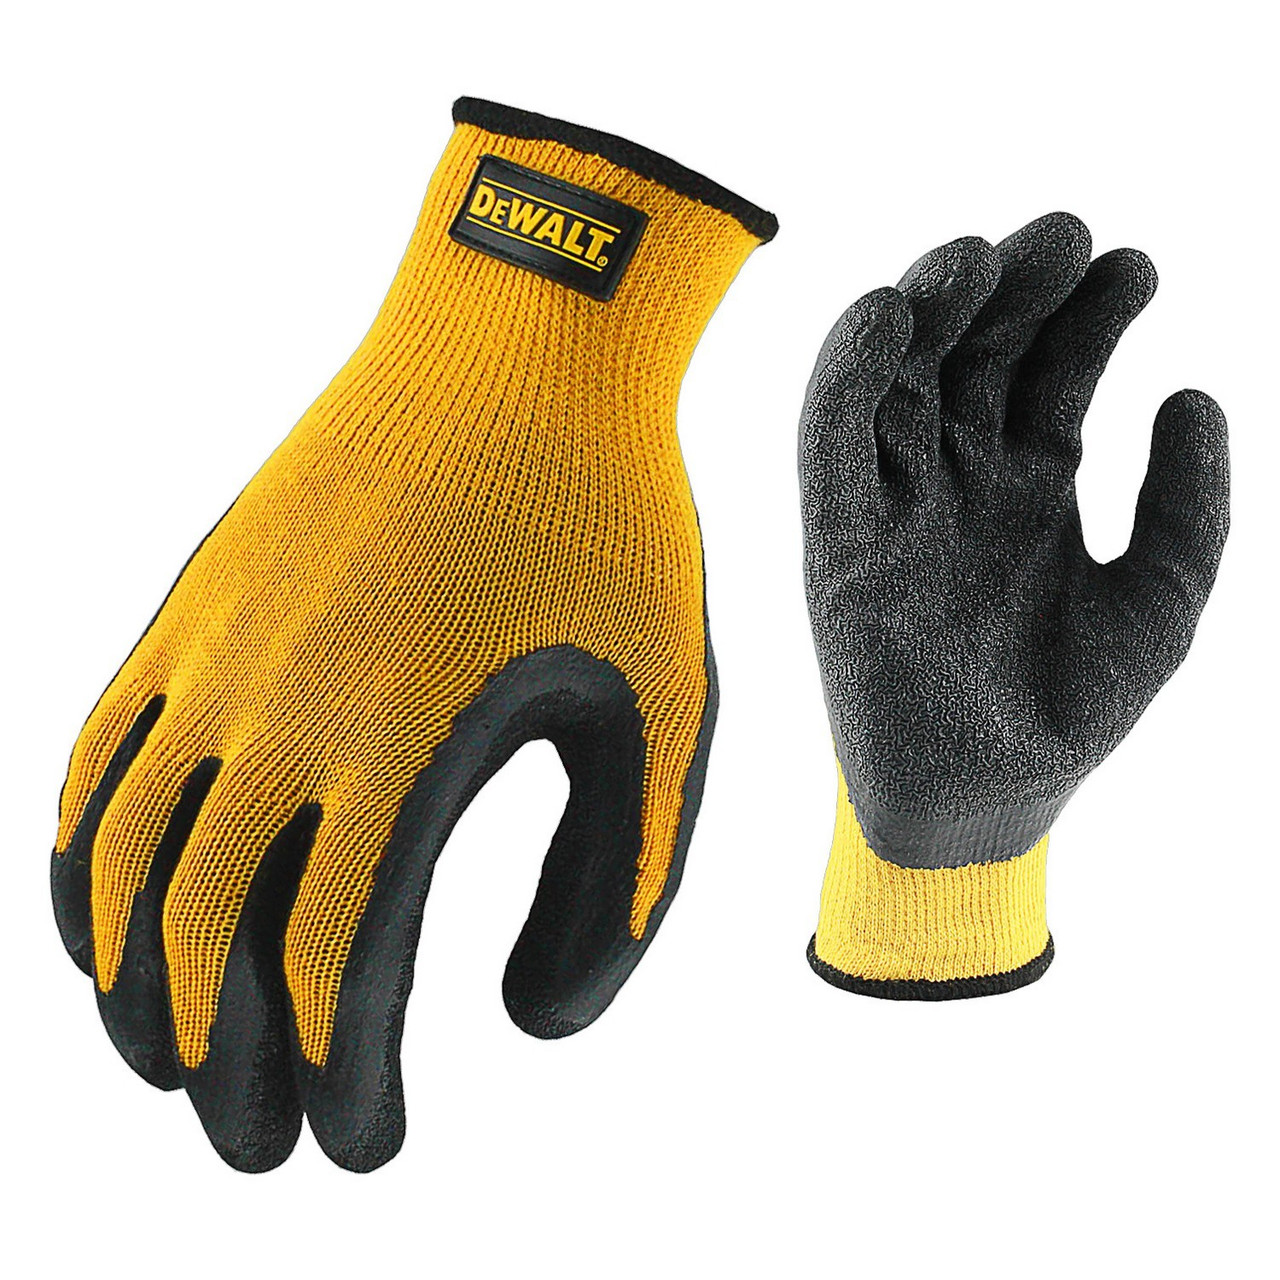 DeWalt DPG70 Textured Rubber Coated Grip Glove